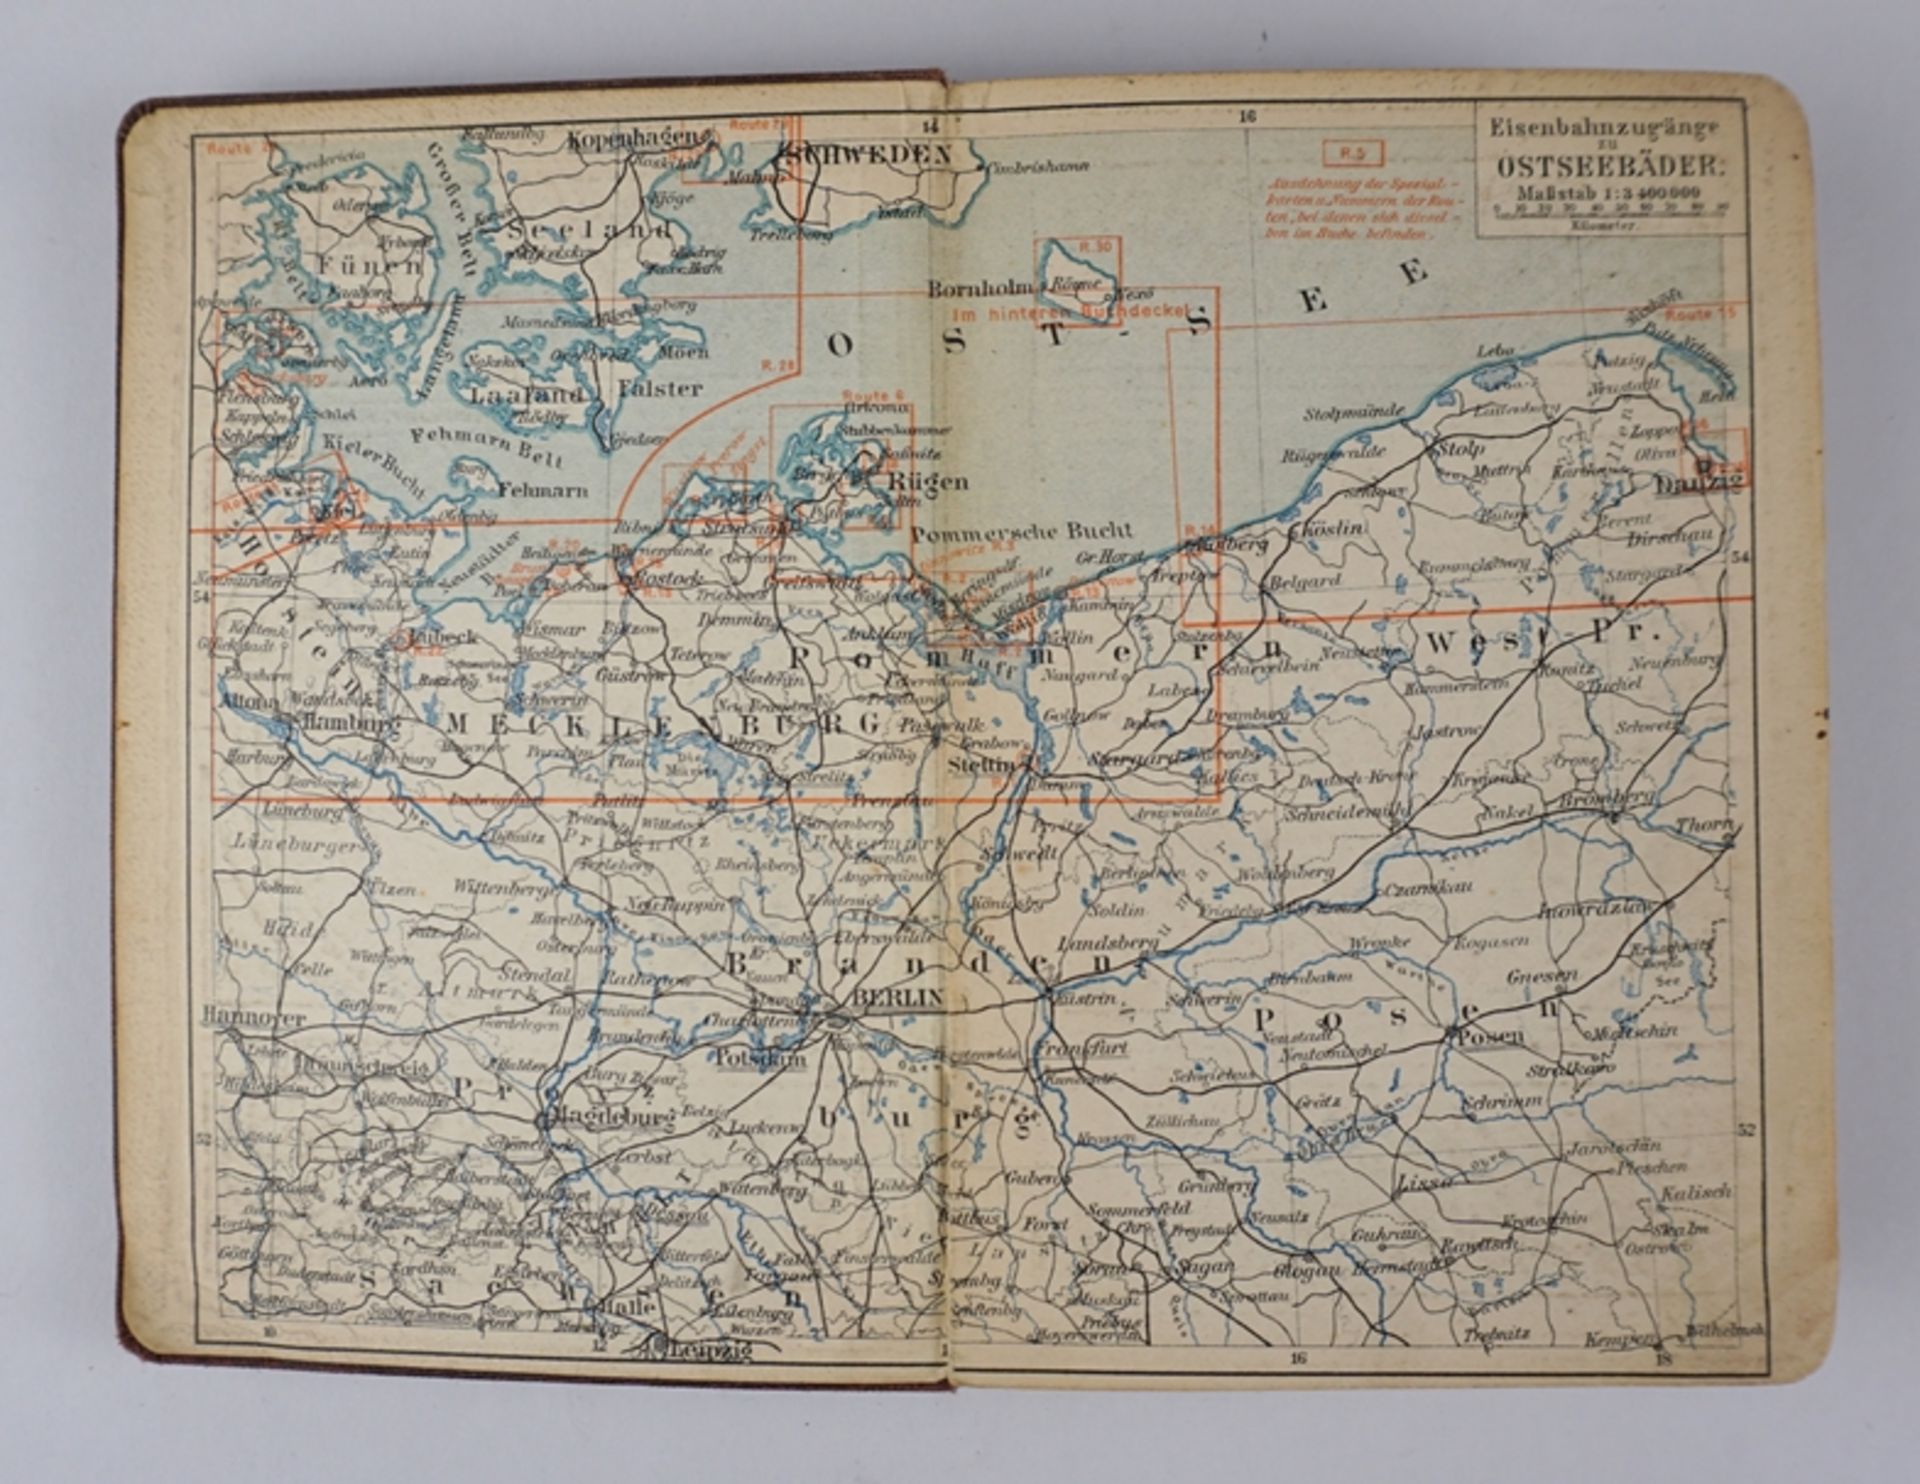 2 Meiers Reisebücher "Ostseebäder", 1903 und "Nordseebäder", 1904  - Bild 2 aus 2